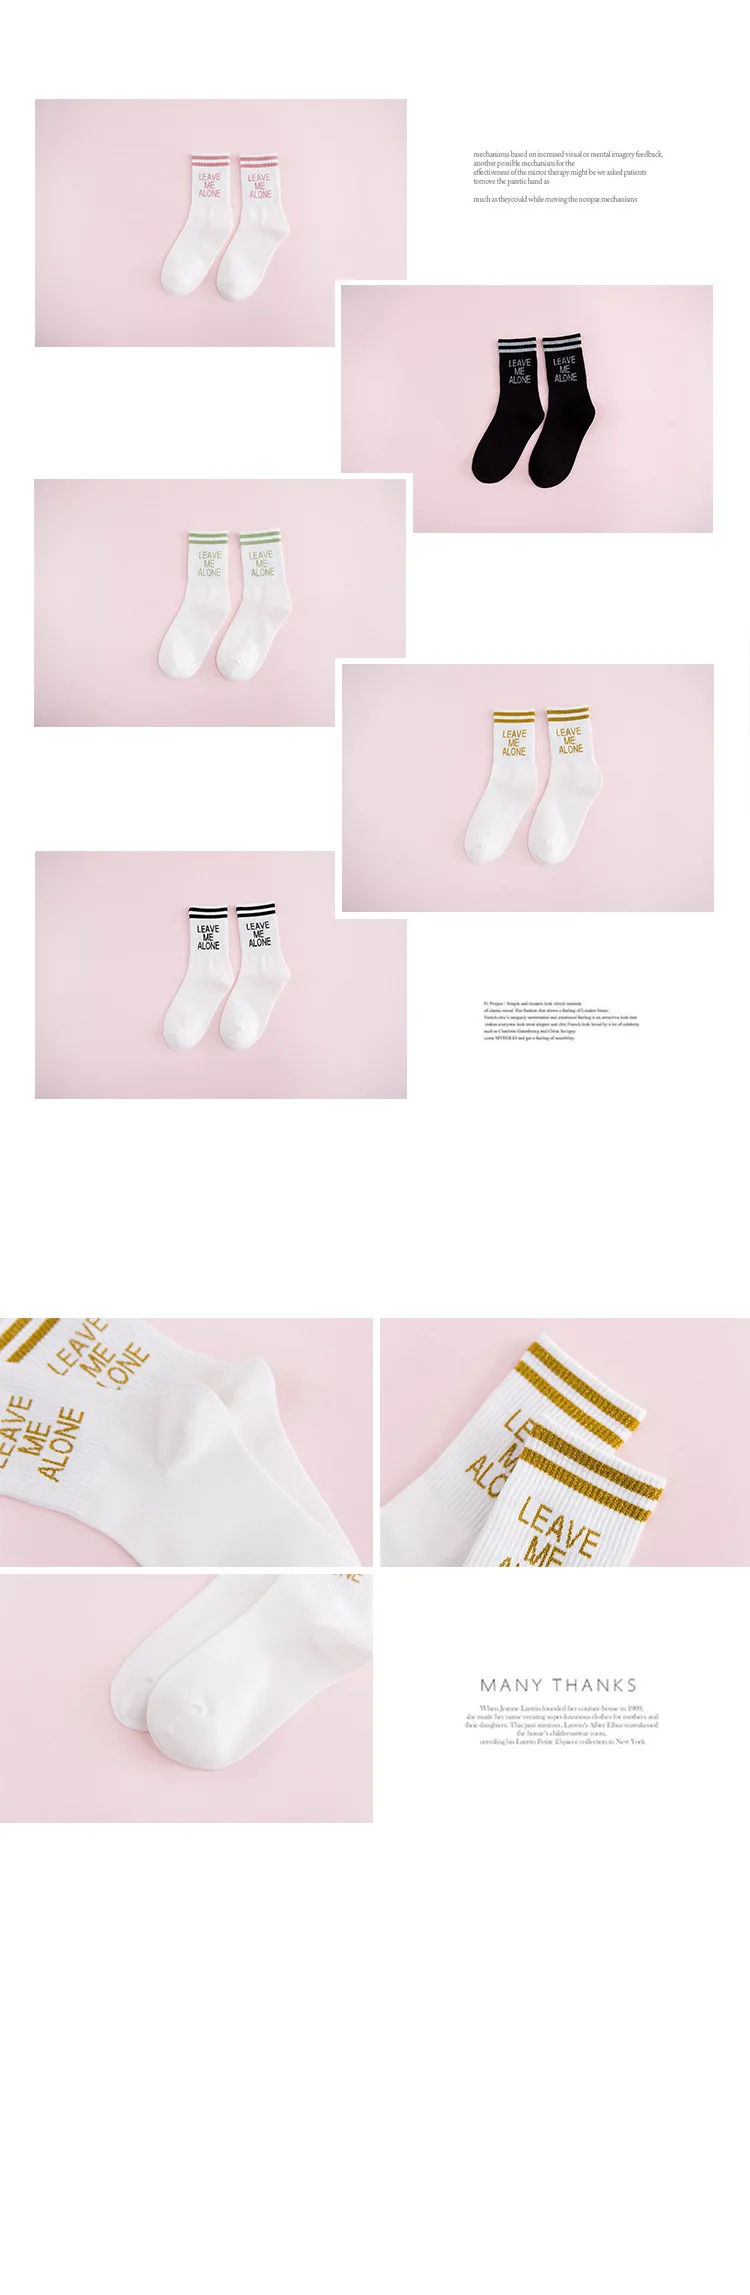 5 пар/набор Для женщин белые носки хлопковая Футболка со смешным Harajuku носки с буквами в полоску женский, черный носки в Корейском стиле SStreetweear милый не говоря уже носки